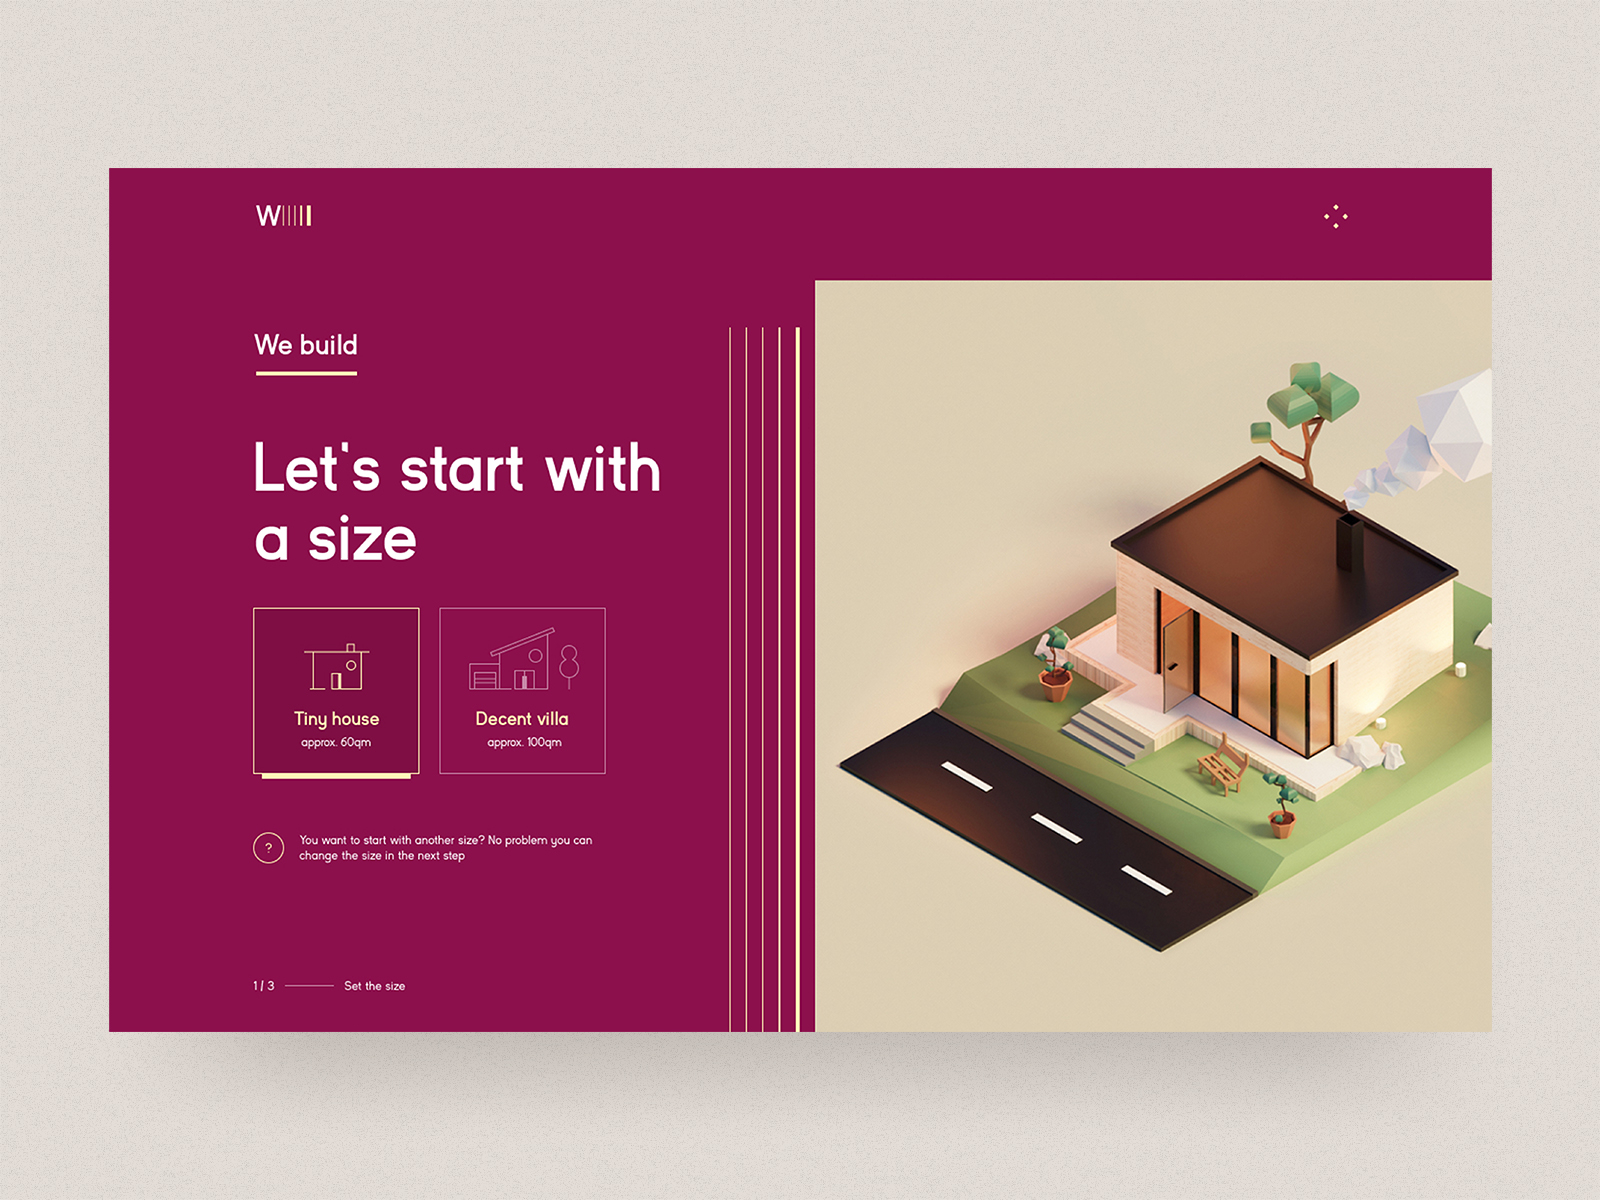 We build - Real estate 3D 🏠 🧱 3d blender desktop estate house icon illustration red selection tiles